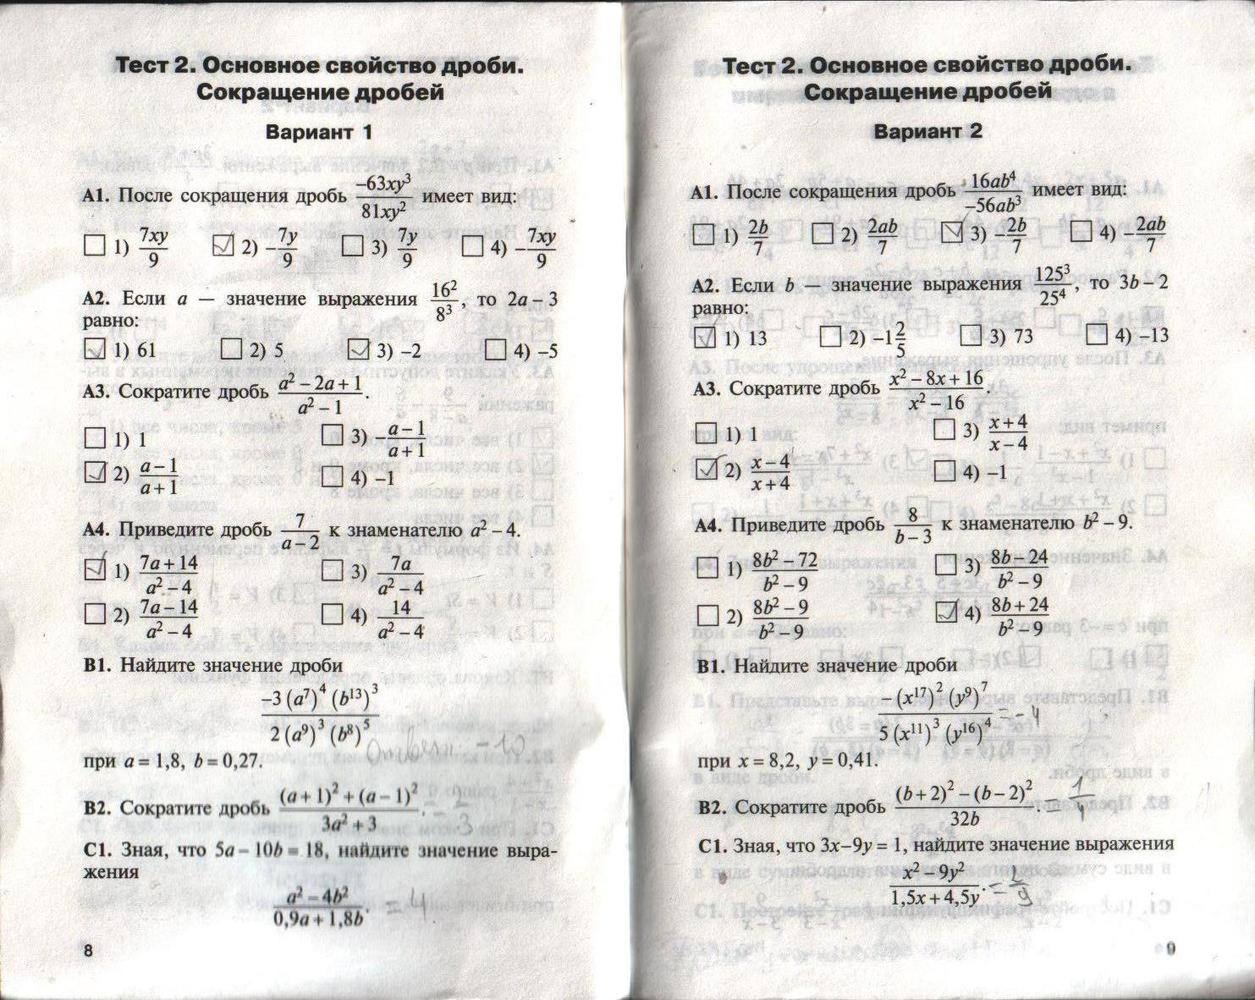 Контрольно-измерительные материалы, 8 класс, Черноруцкий В.В., 2012, задание: стр. 8-9